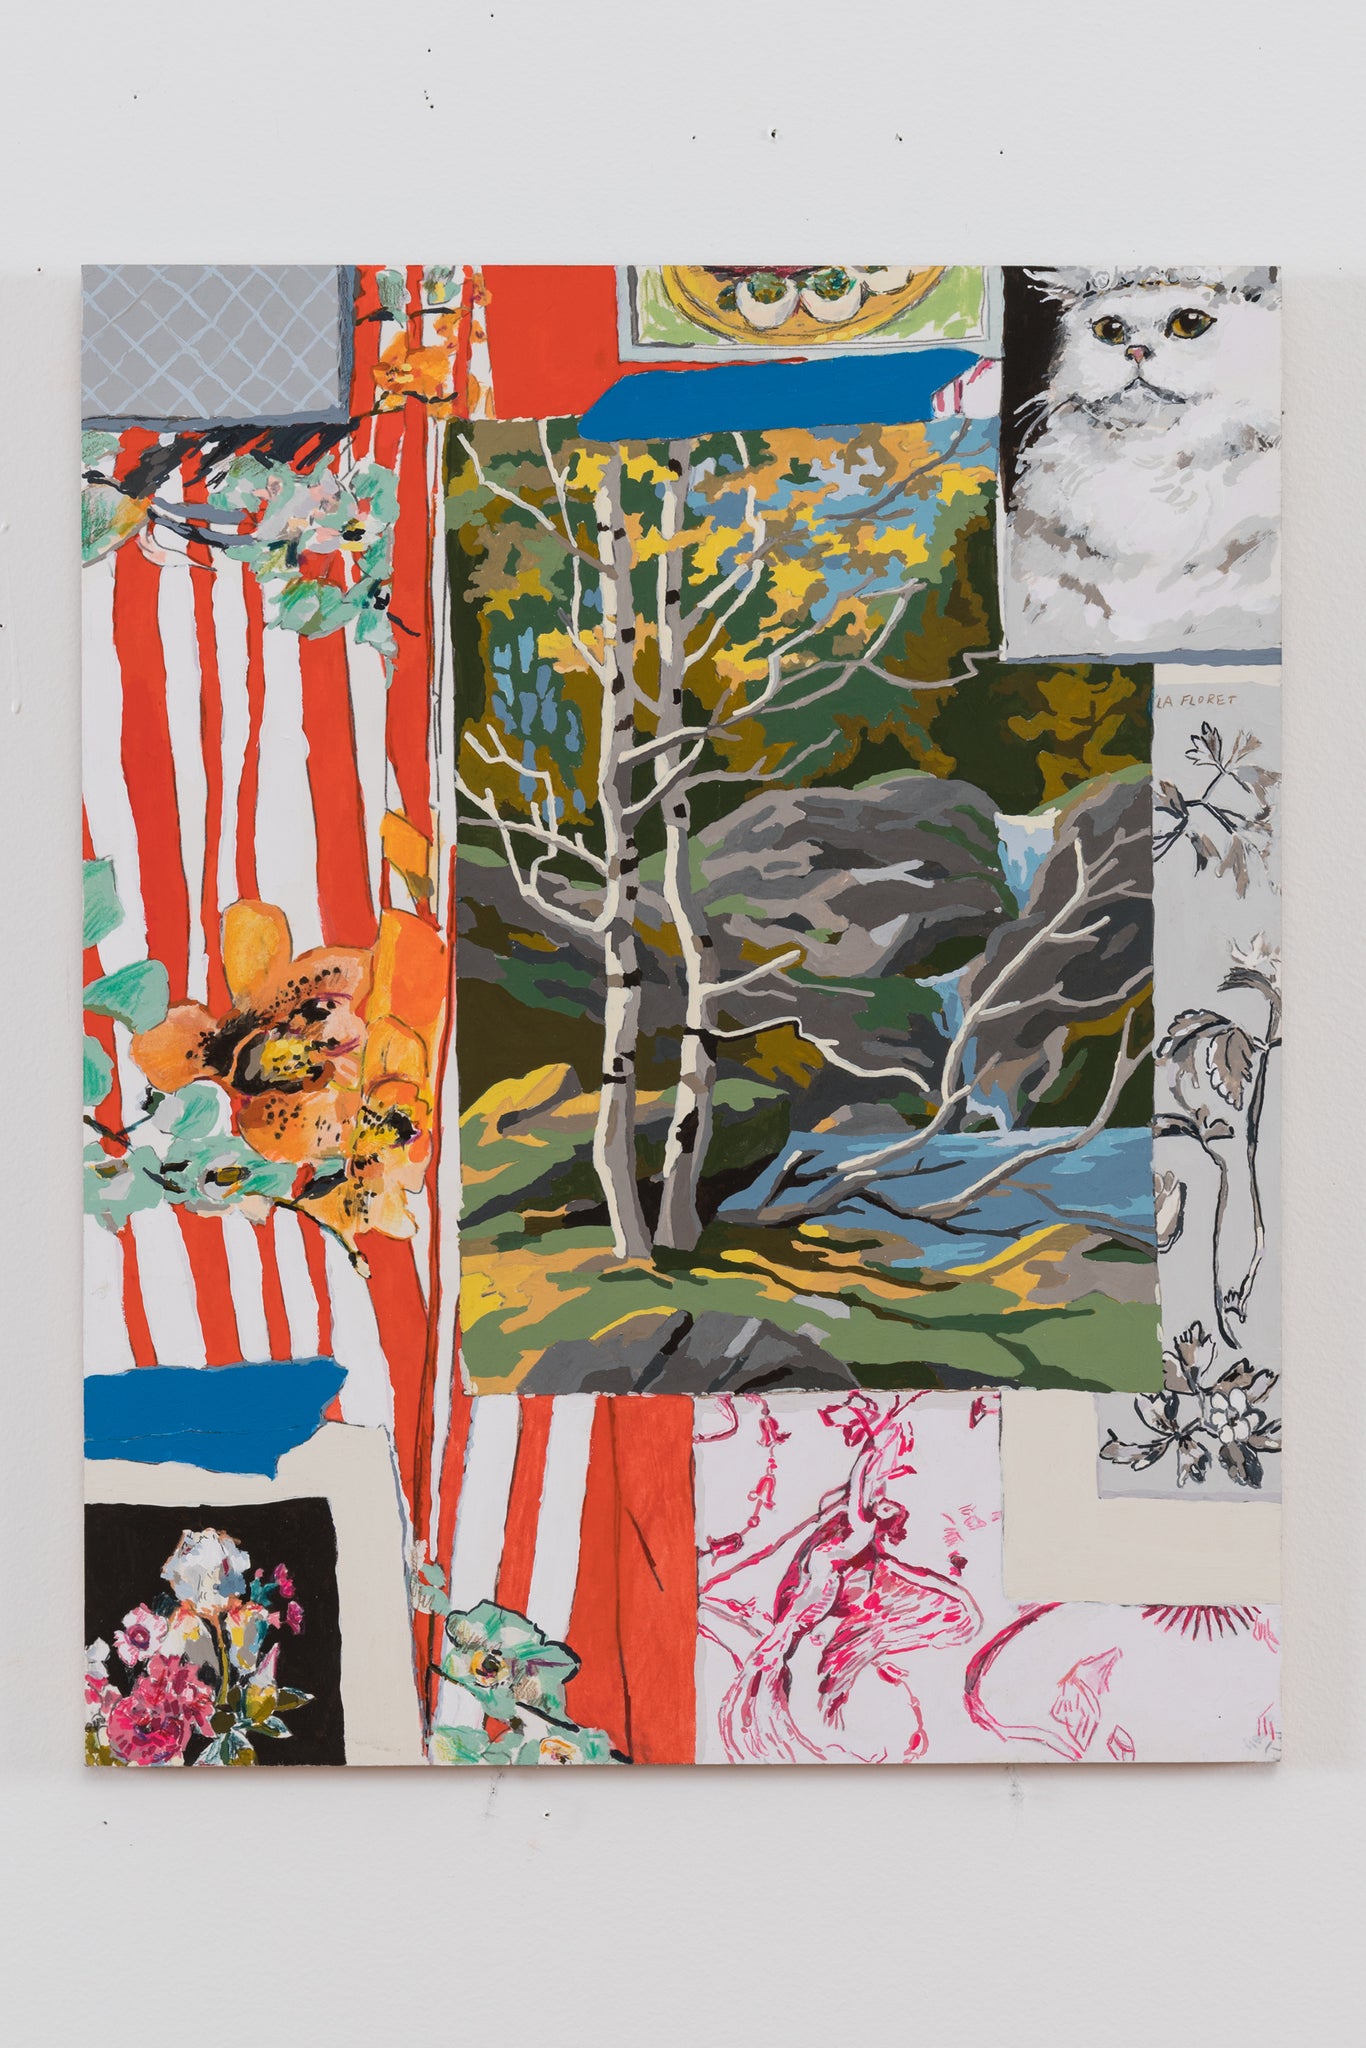 Kirstin Lamb, "Painting Studio with PBN, Textiles and Cat"